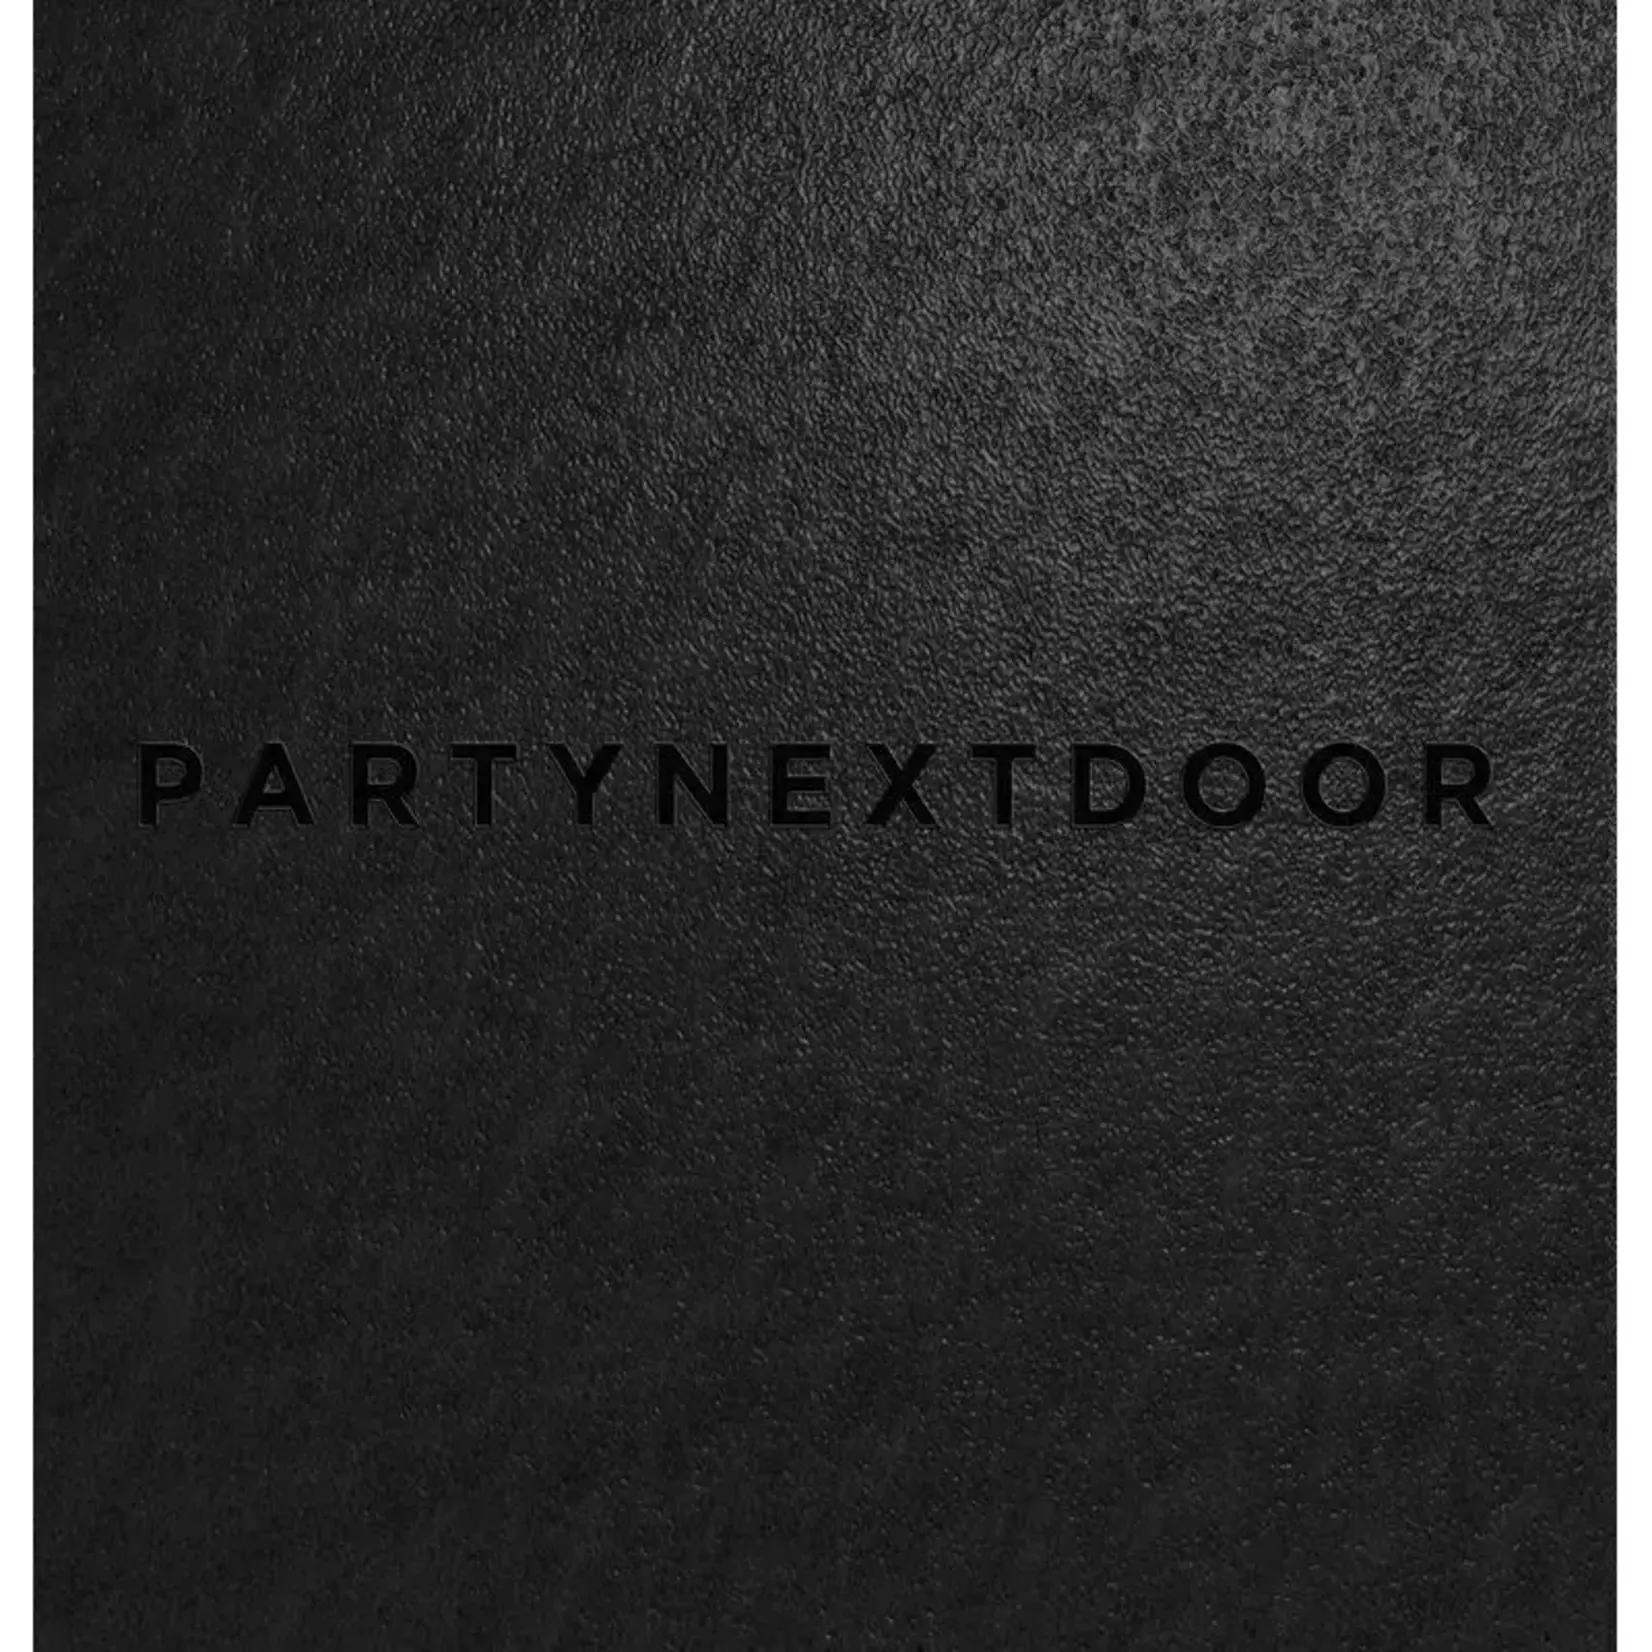 [New] Partynextdoor - The PartyNextDoor Collection (4LP)